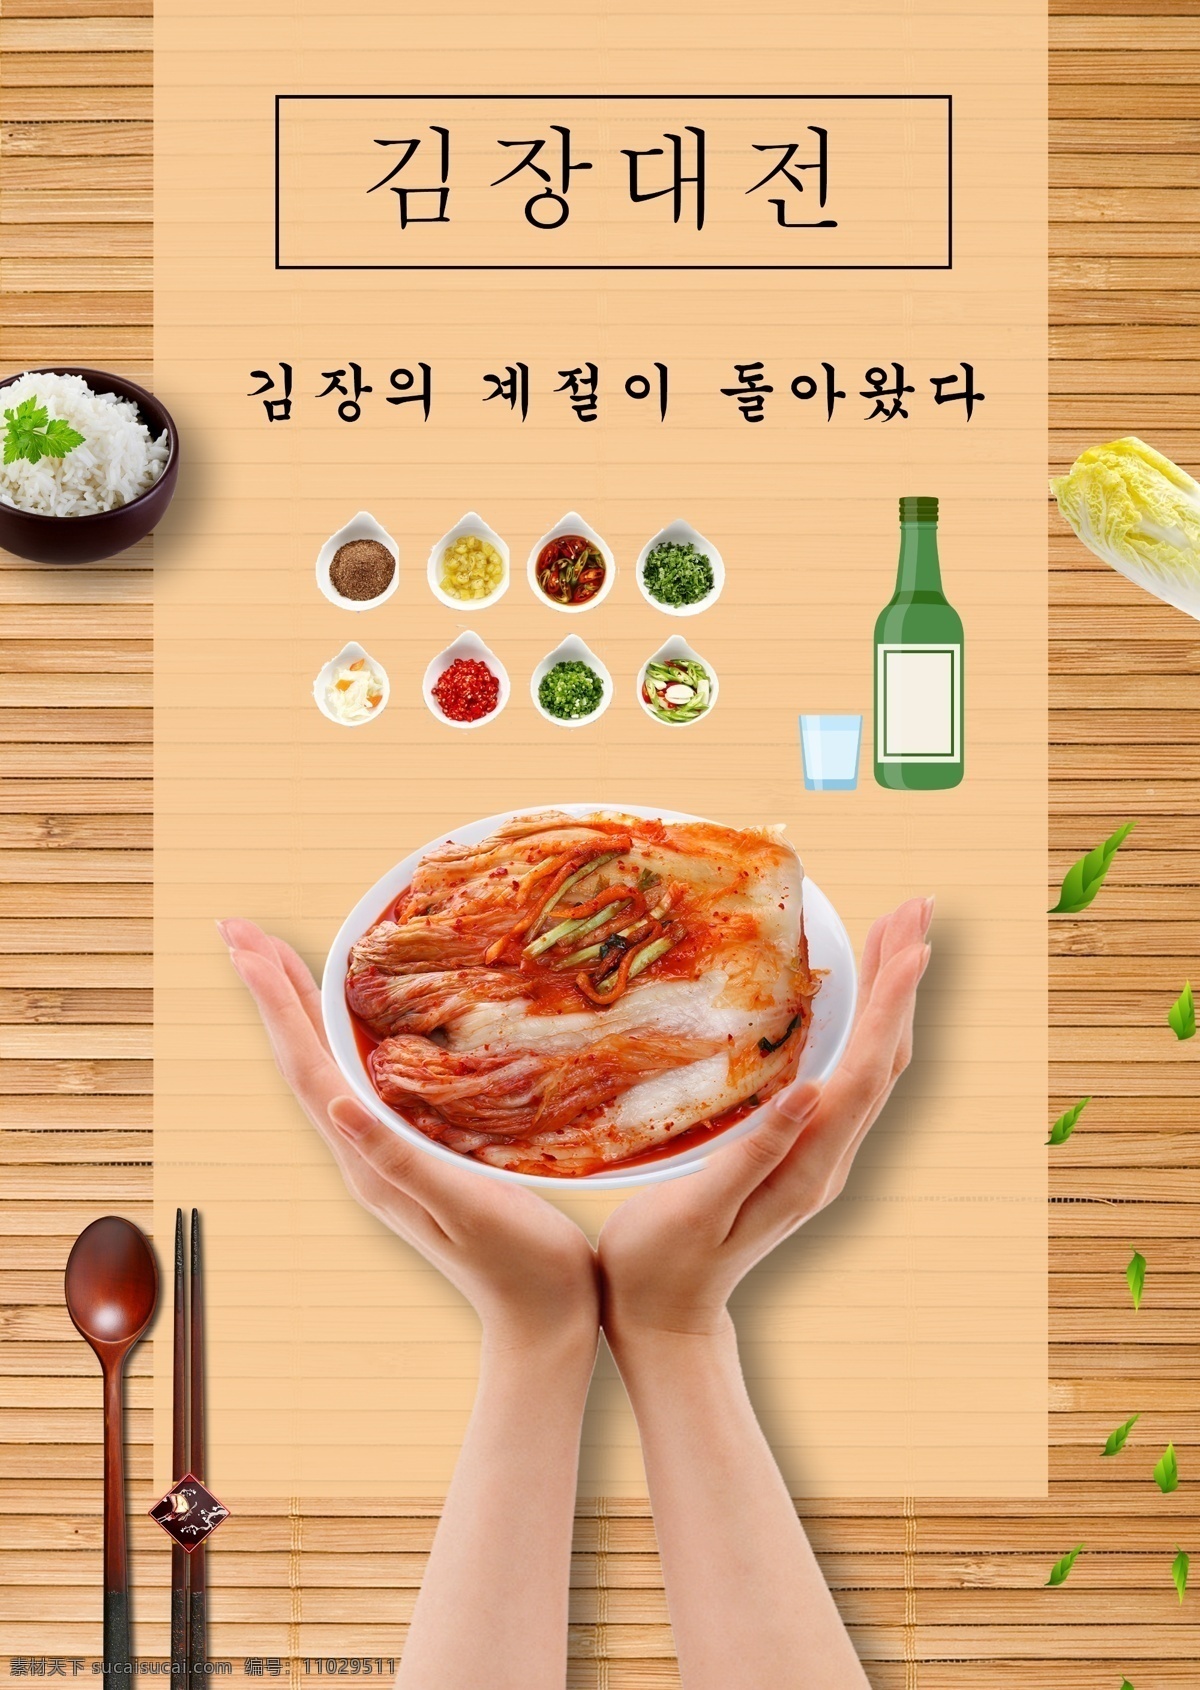 韩国 美味 泡菜 广告 海报 背景 美味的 泡菜广告海报 展板 酸洗 卷心菜 餐饮 广告元素 绘画 剪辑绘画 美丽